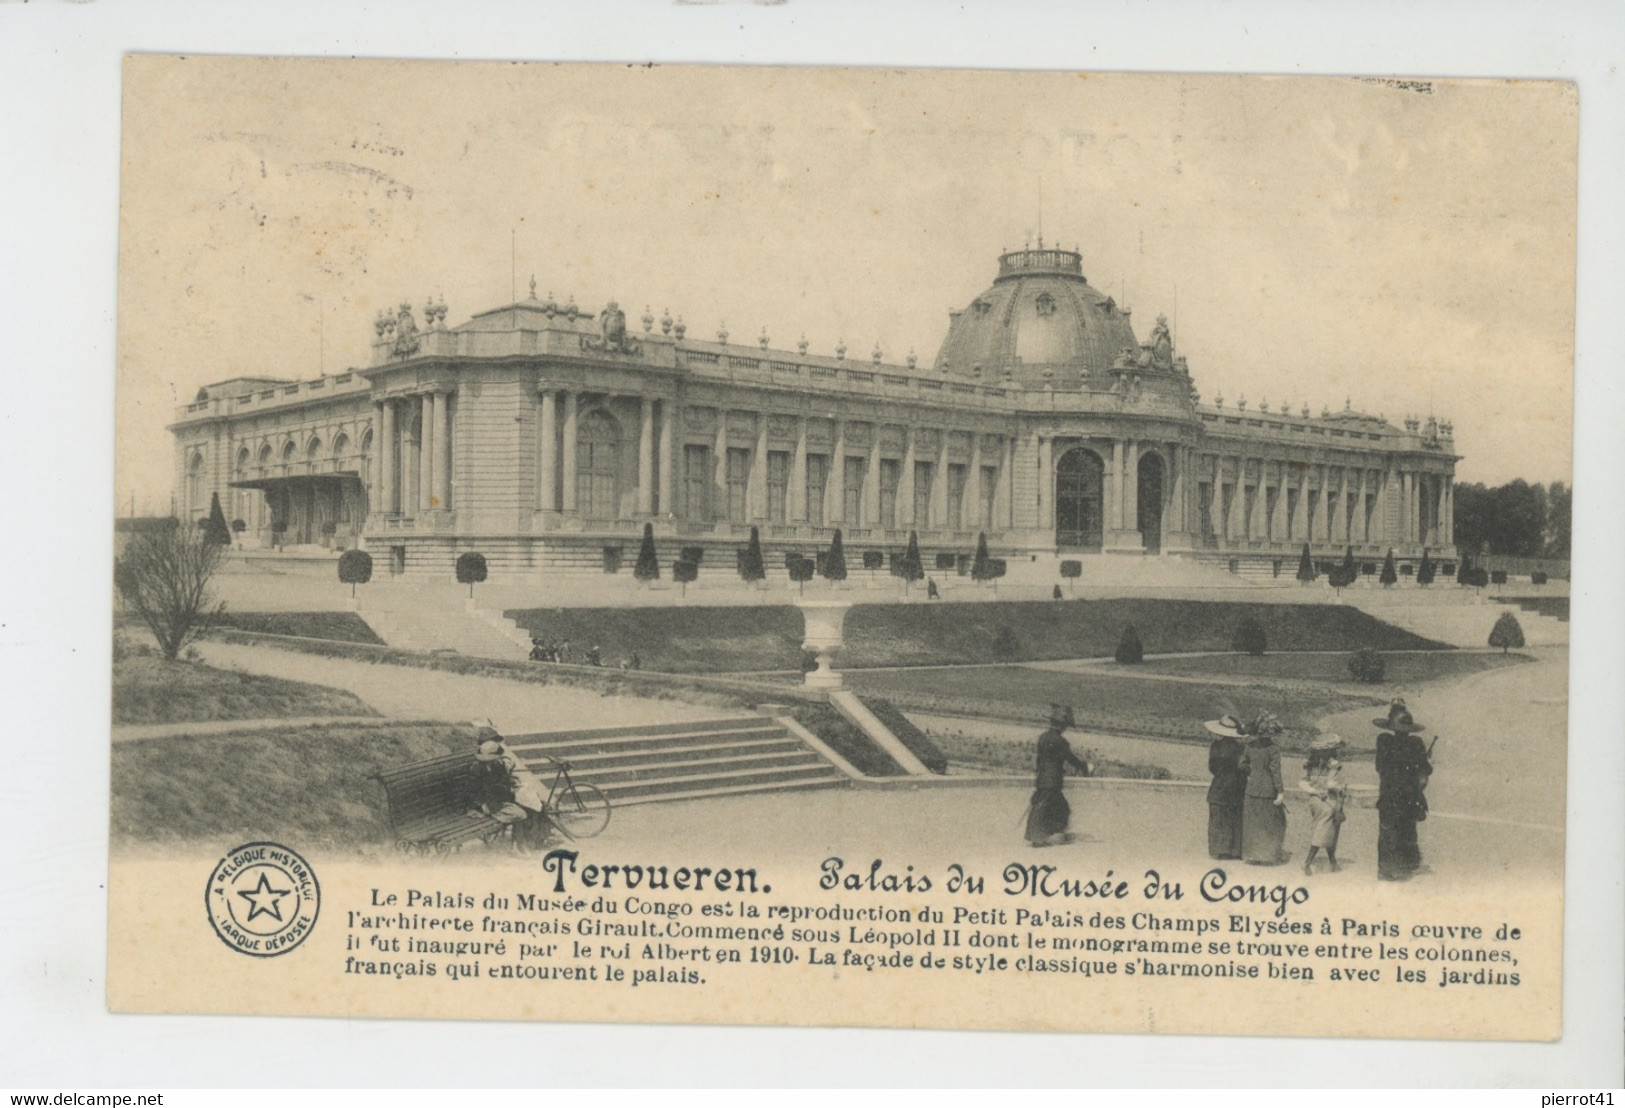 BELGIQUE - Carte PUB " PHOTOTYPIE MODERNE E. DESAIX " - LA BELGIQUE HISTORIQUE - TERVUEREN - Palais Du Musée Du Congo - Lotes Y Colecciones